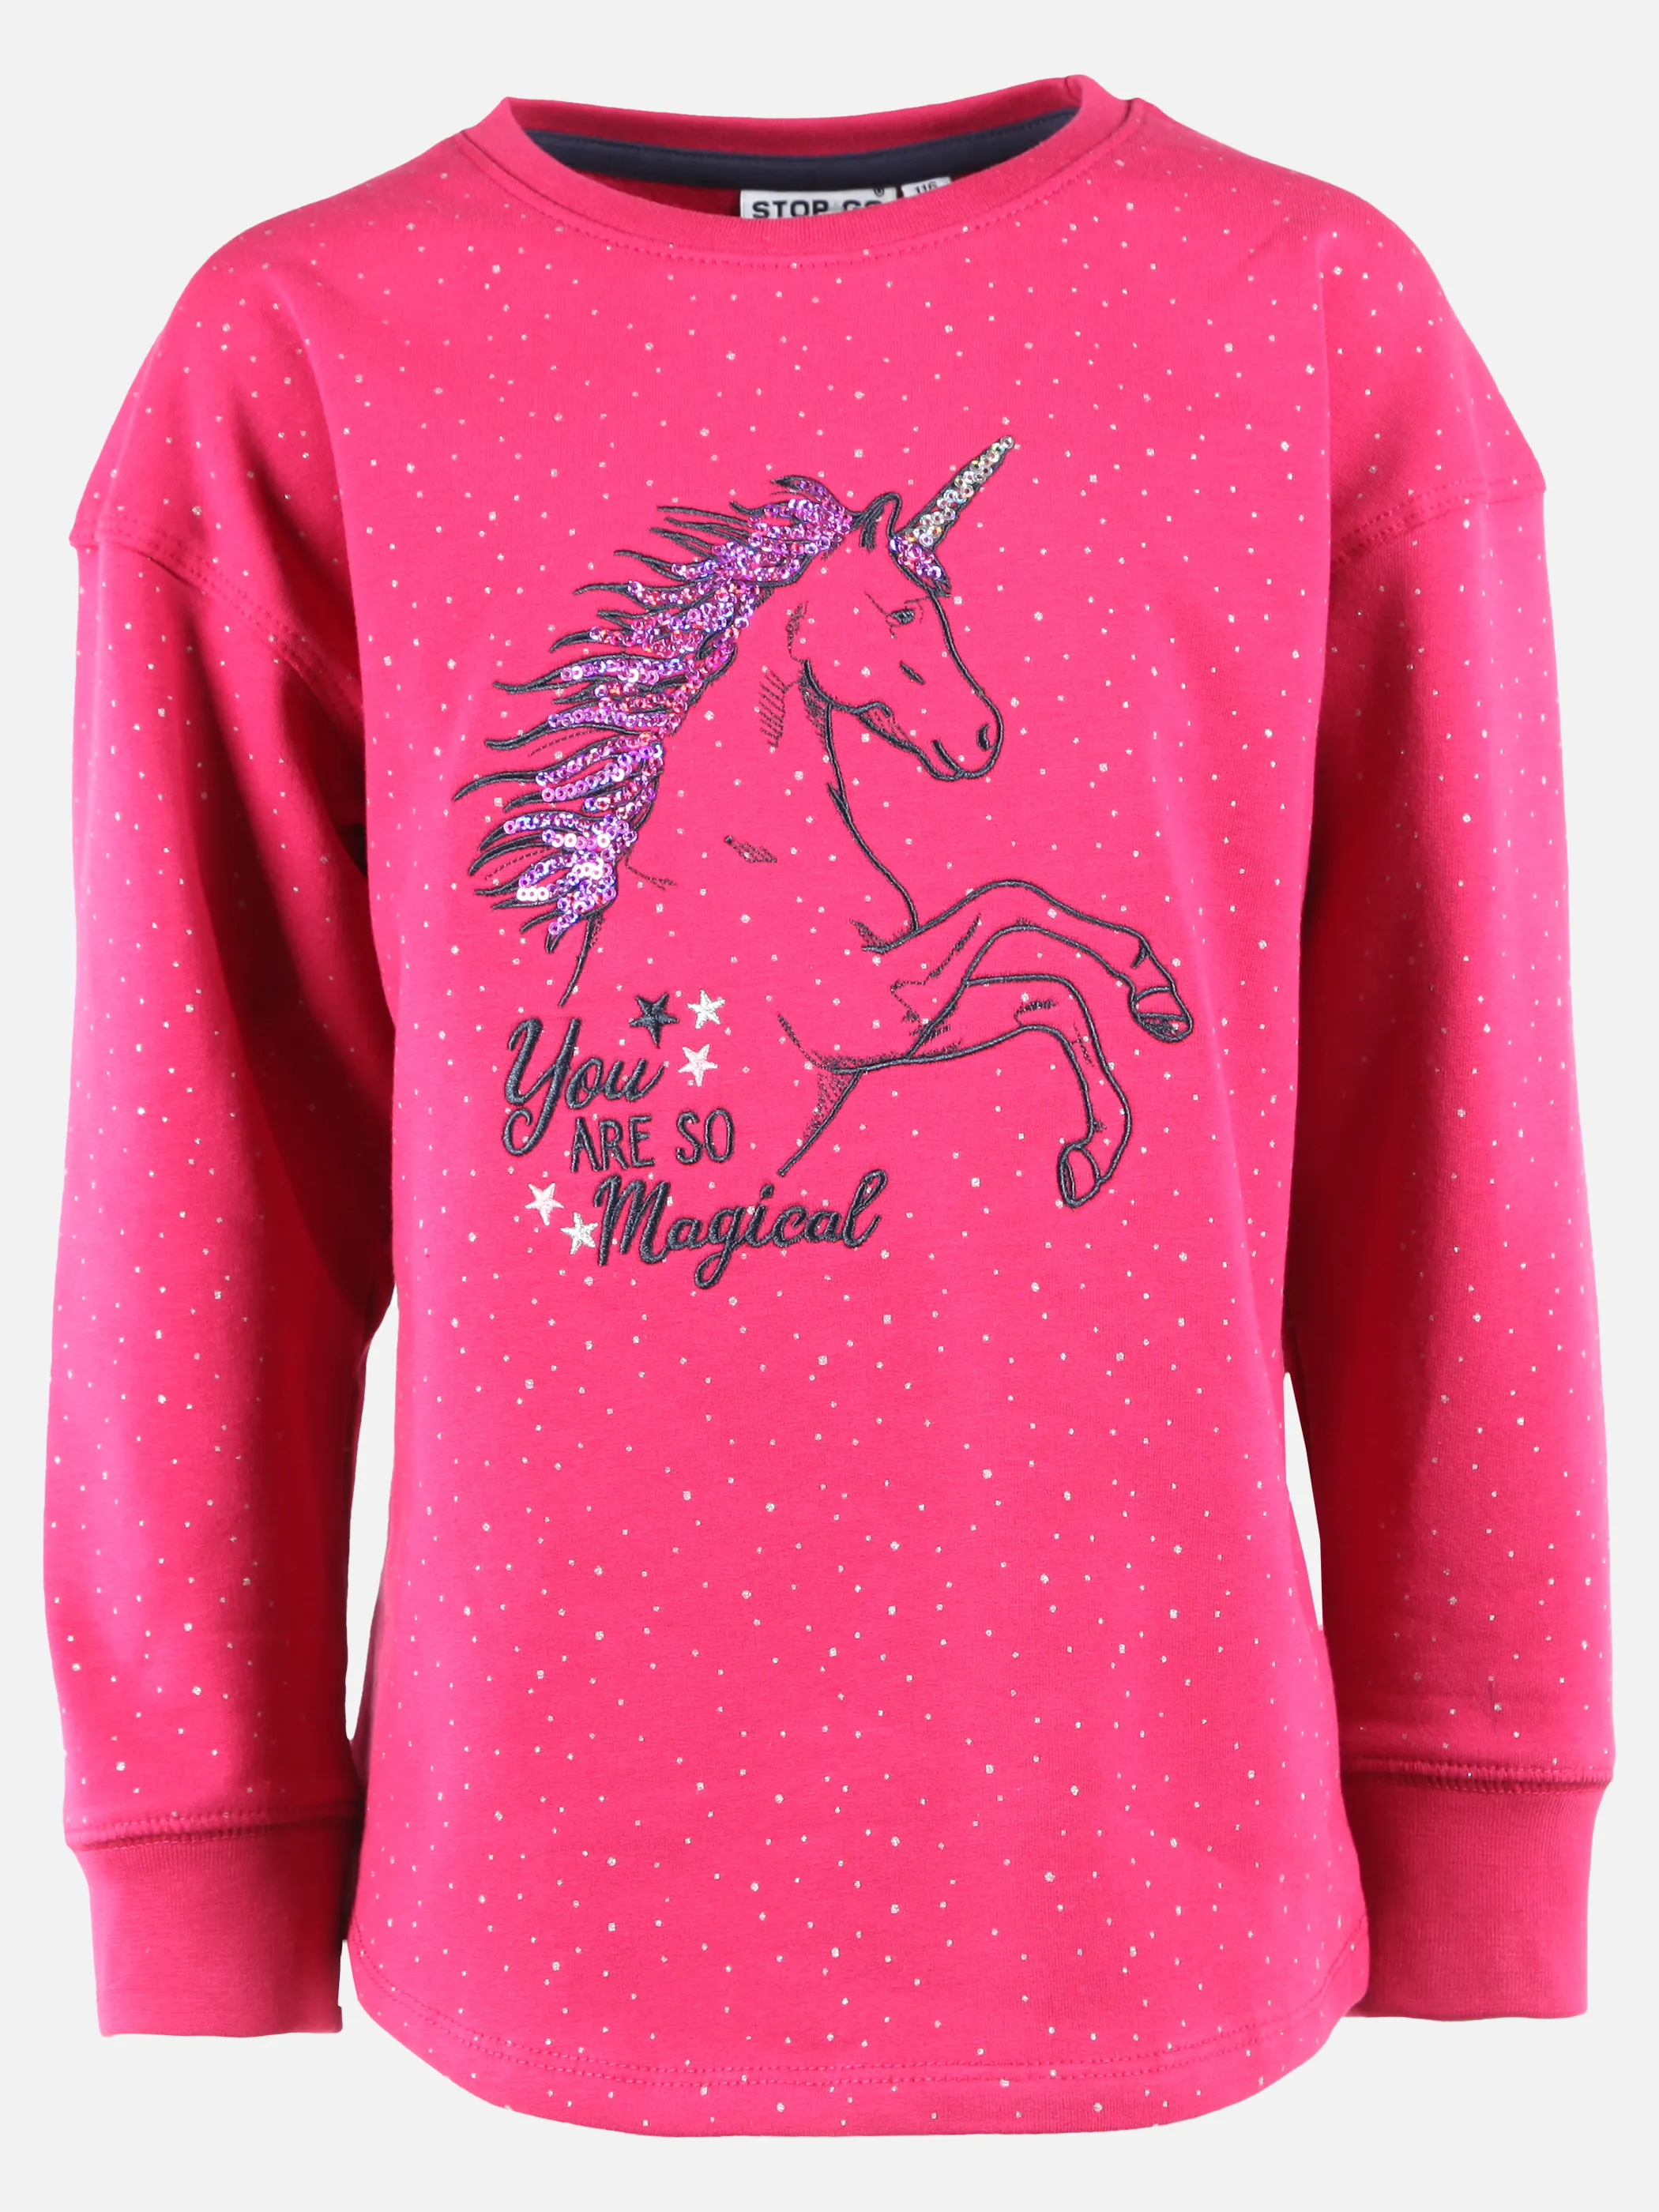 Stop + Go KM Sweatshirt mit Pferdeprint in pink Pink 899793 PINK 1